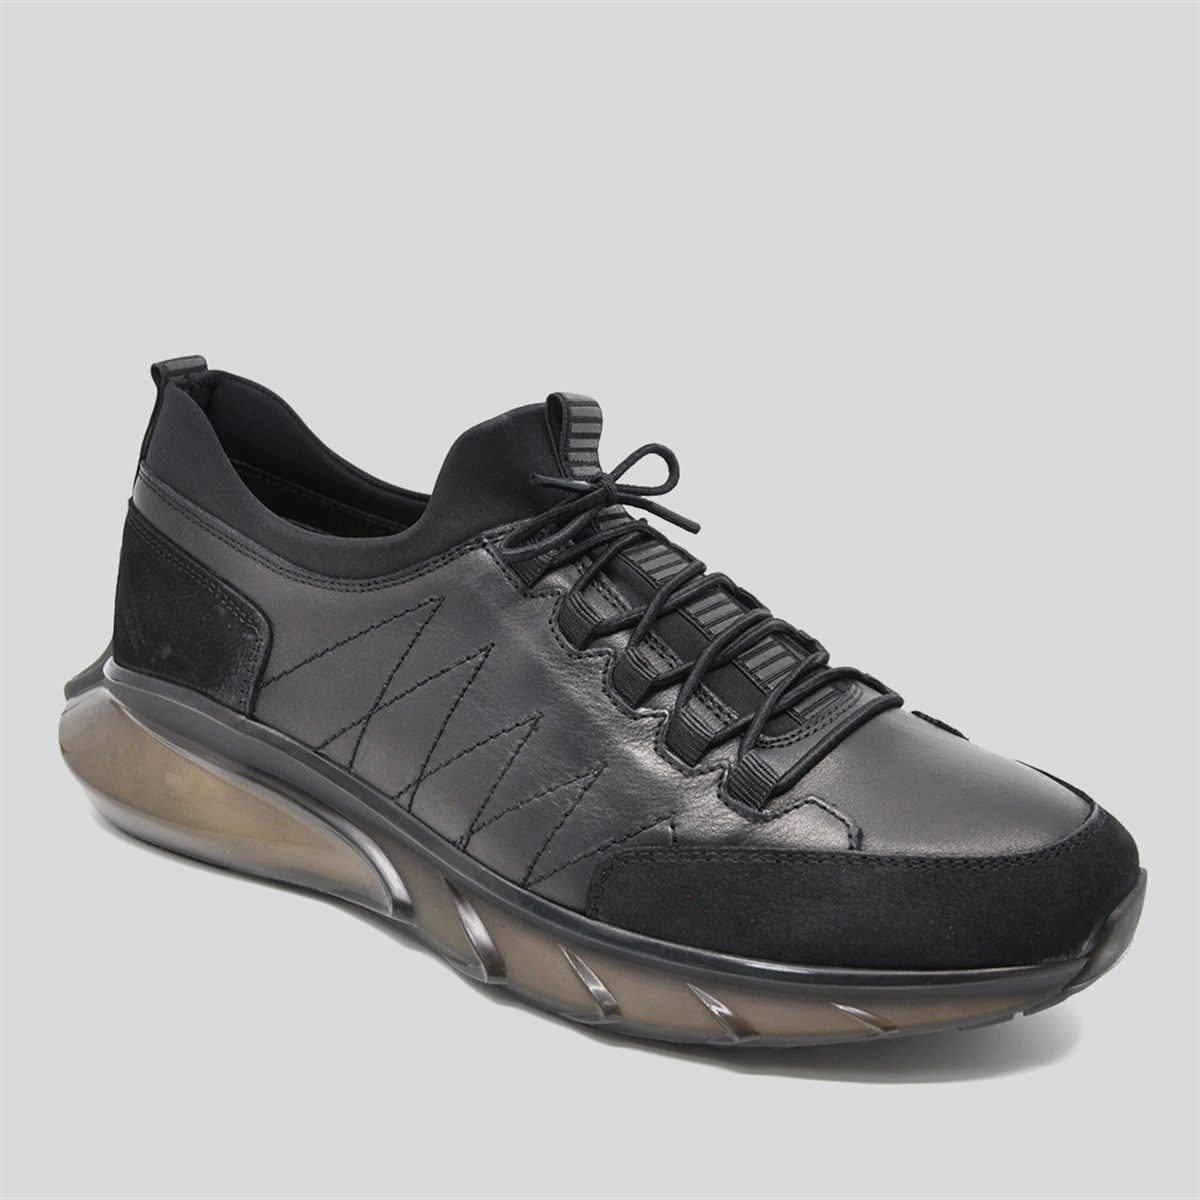 Fosco Erkek Hakiki Deri Air Taban Sneakers Spor Ayakkabı, Renk: Siyah, Beden: 41